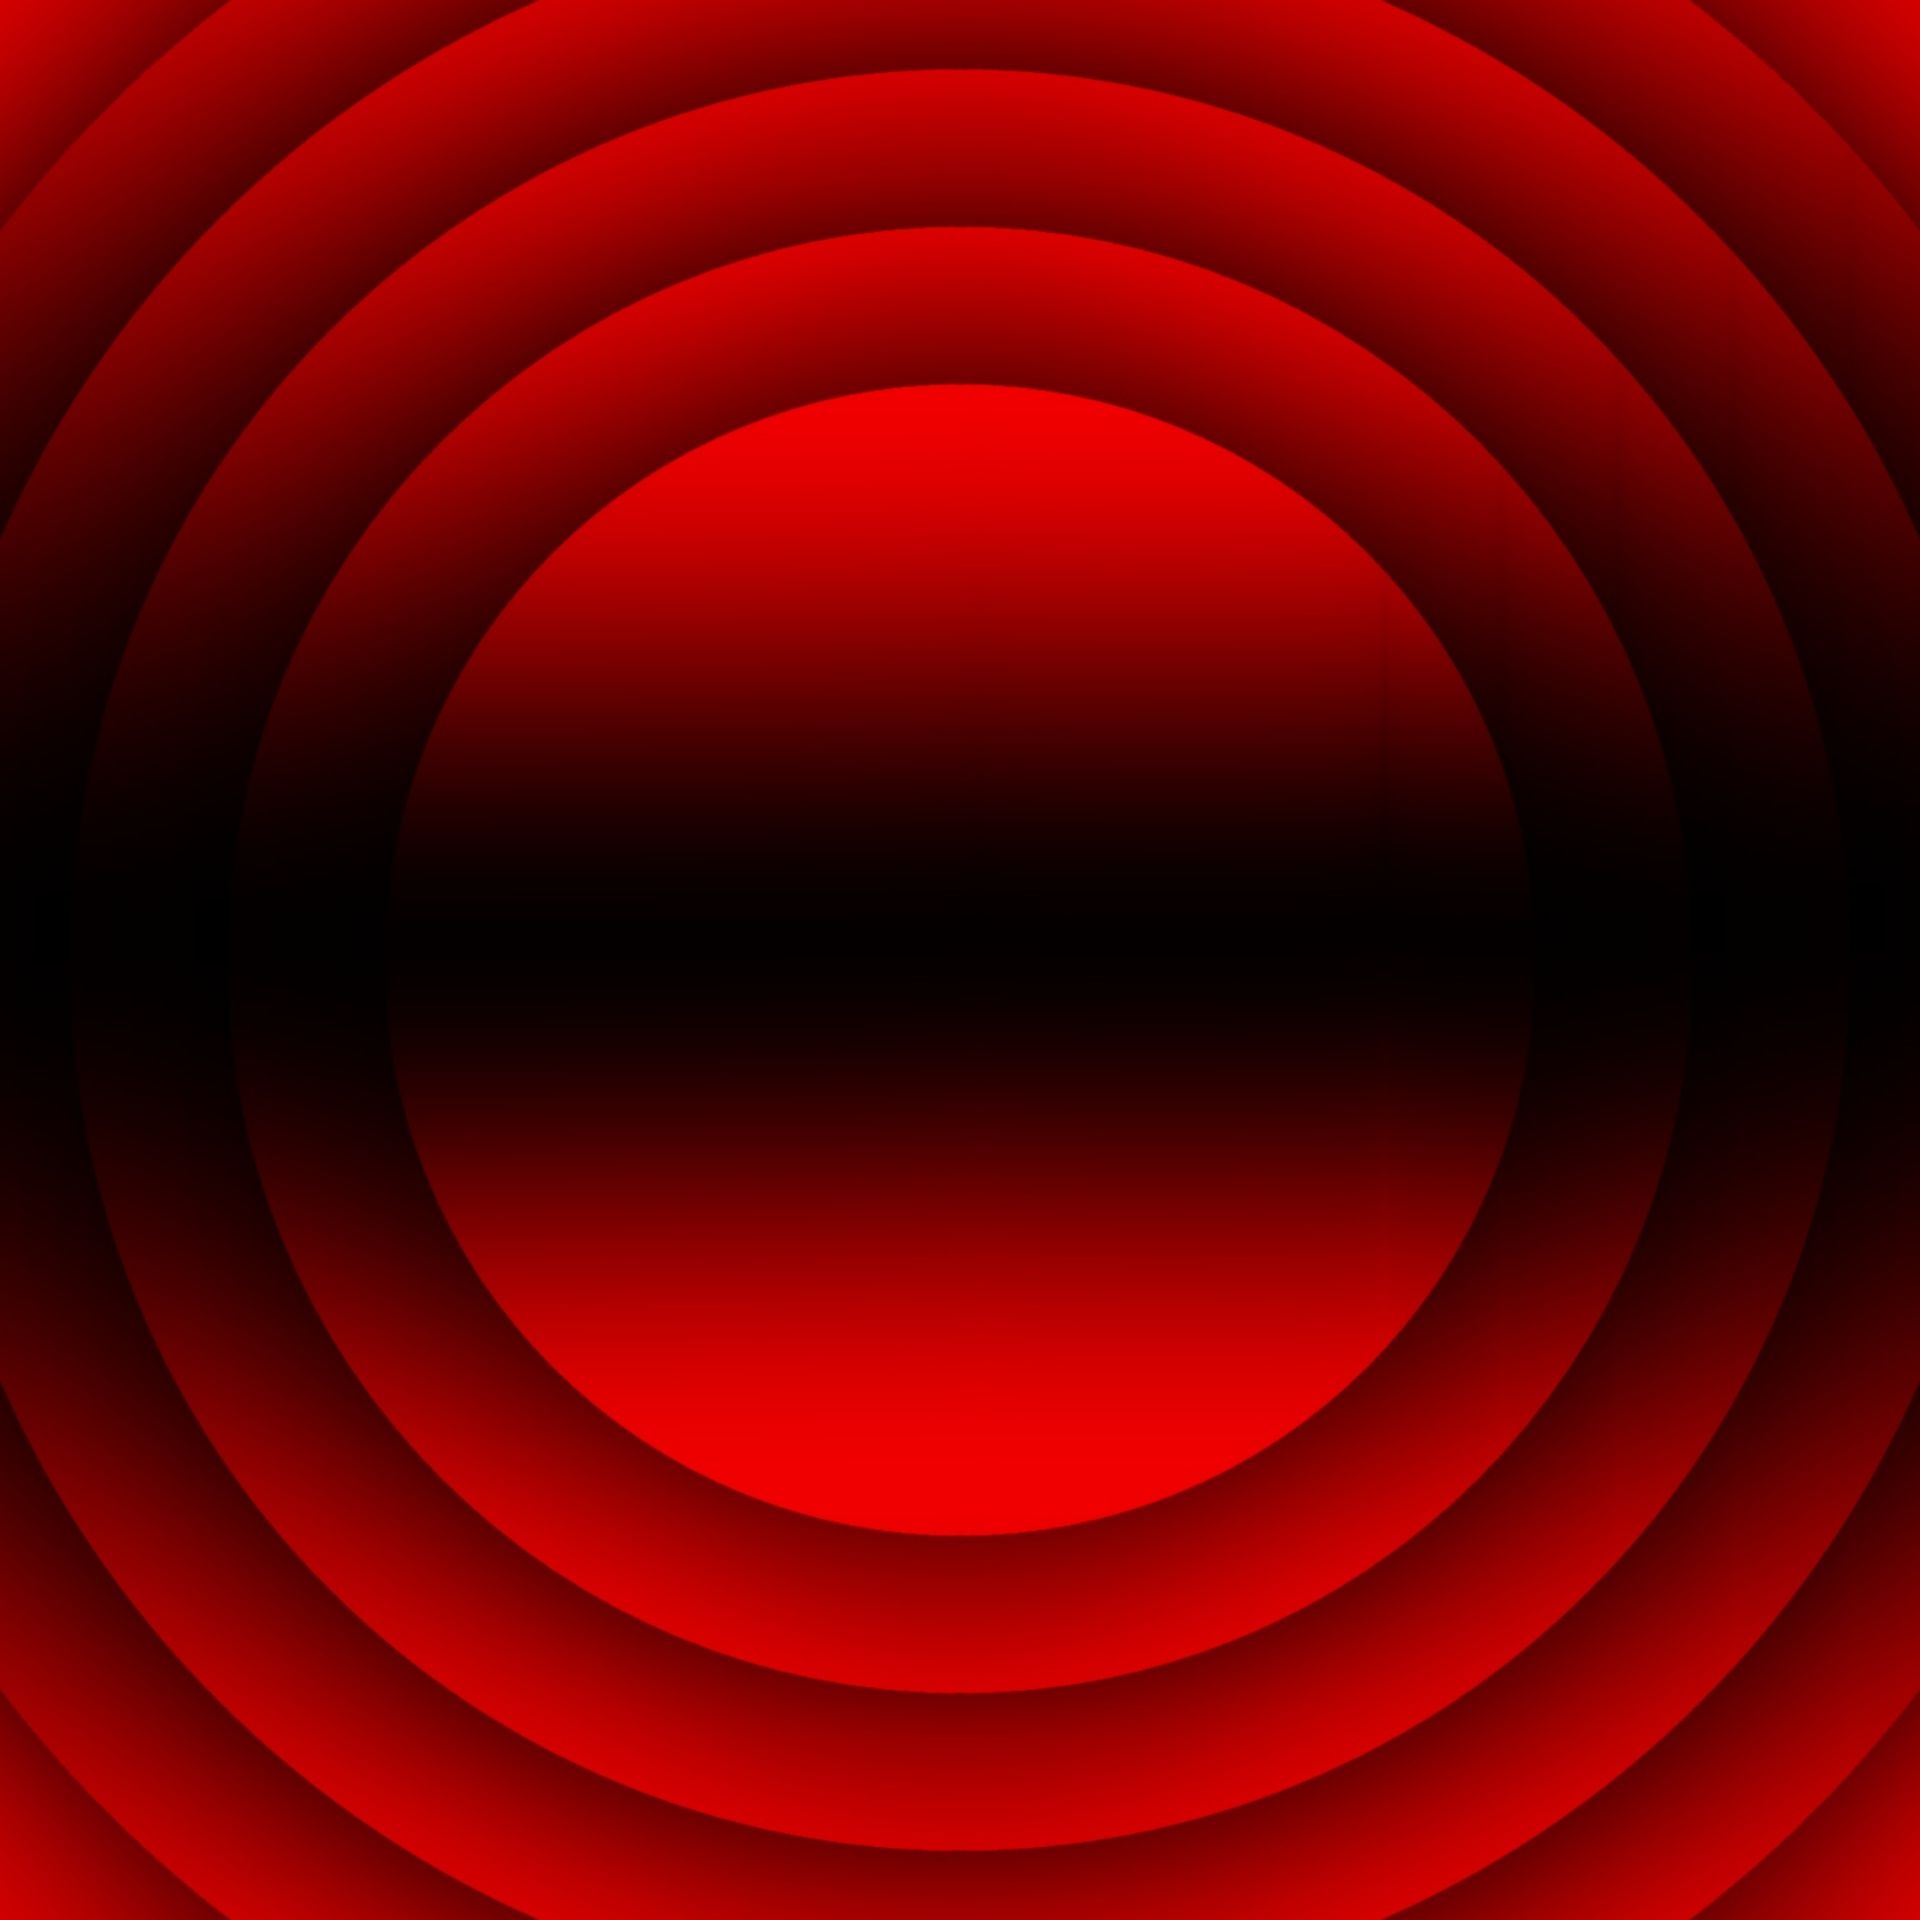 Với Hình Nền Hình Tròn Đen Đỏ, bạn sẽ được trải nghiệm một không gian online mới hoàn toàn. Bộ sưu tập này mang đến cho bạn những hình ảnh cảm hứng và sáng tạo, đầy tính thẩm mỹ. Thanh đen bao quanh hình tròn màu đỏ tạo nên một tác phẩm nghệ thuật đầy chất hấp dẫn.